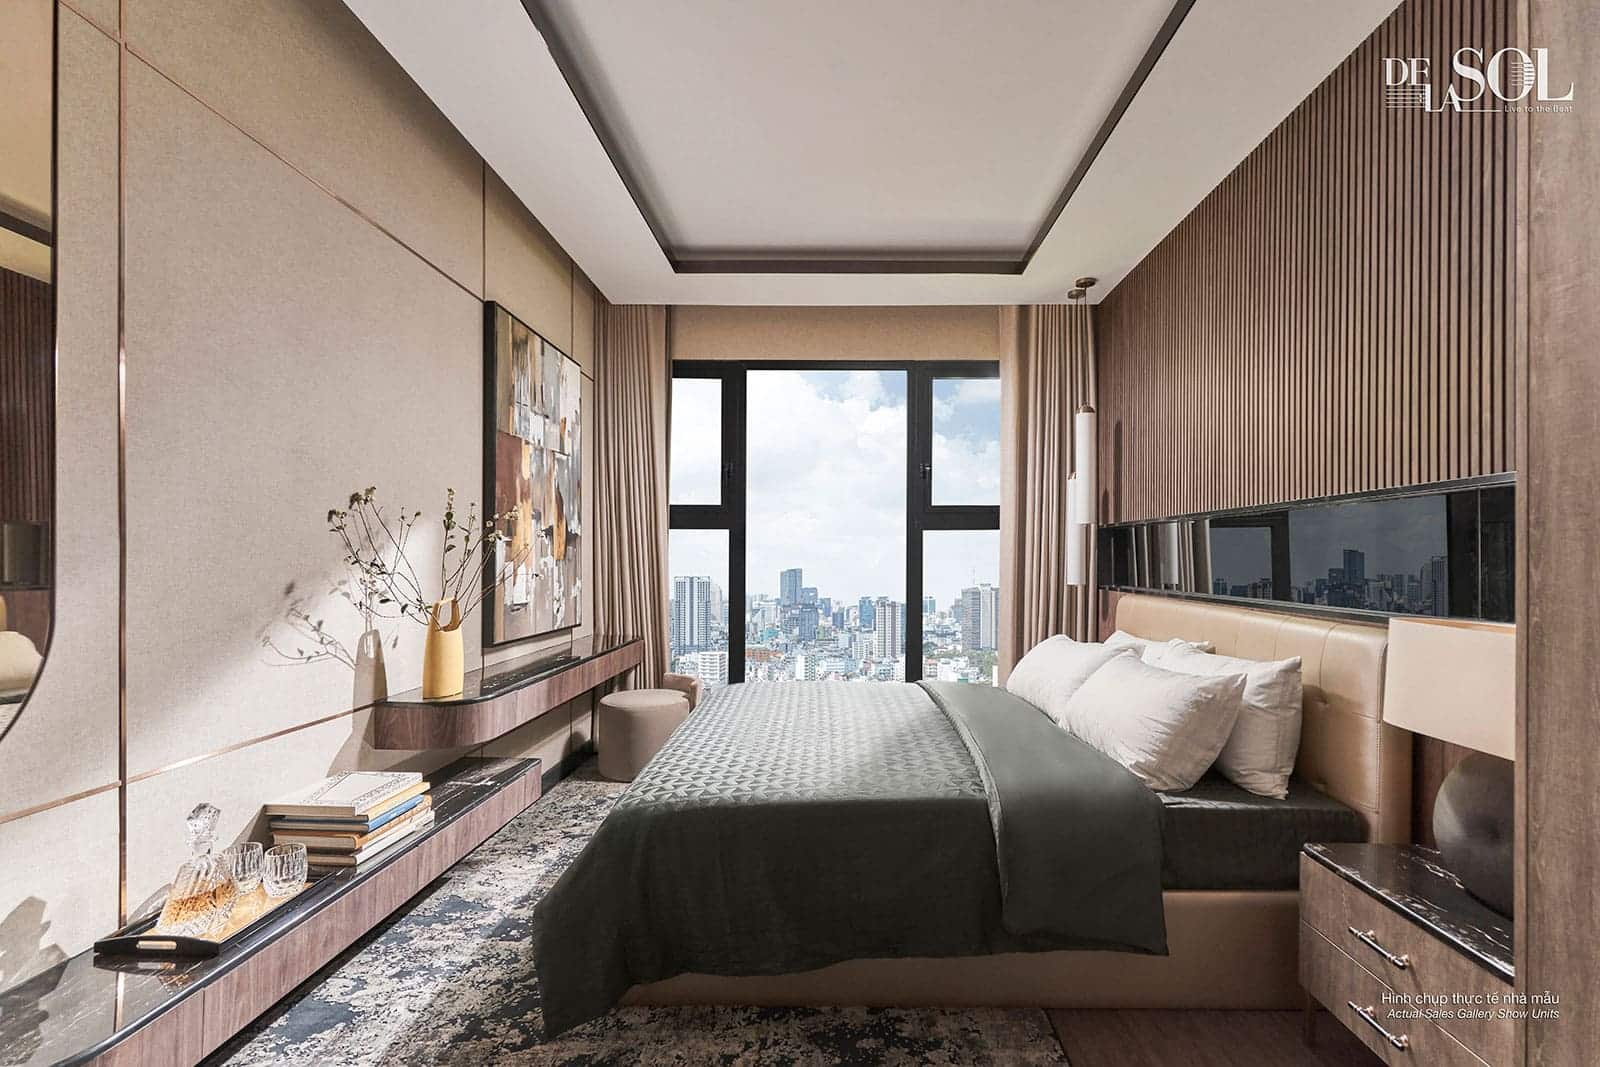 Hình ảnh căn hộ mẫu Lumi Hanoi CapitaLand được thiết kế sang trọng, mang đến không gian sống lý tưởng cho cư dân.